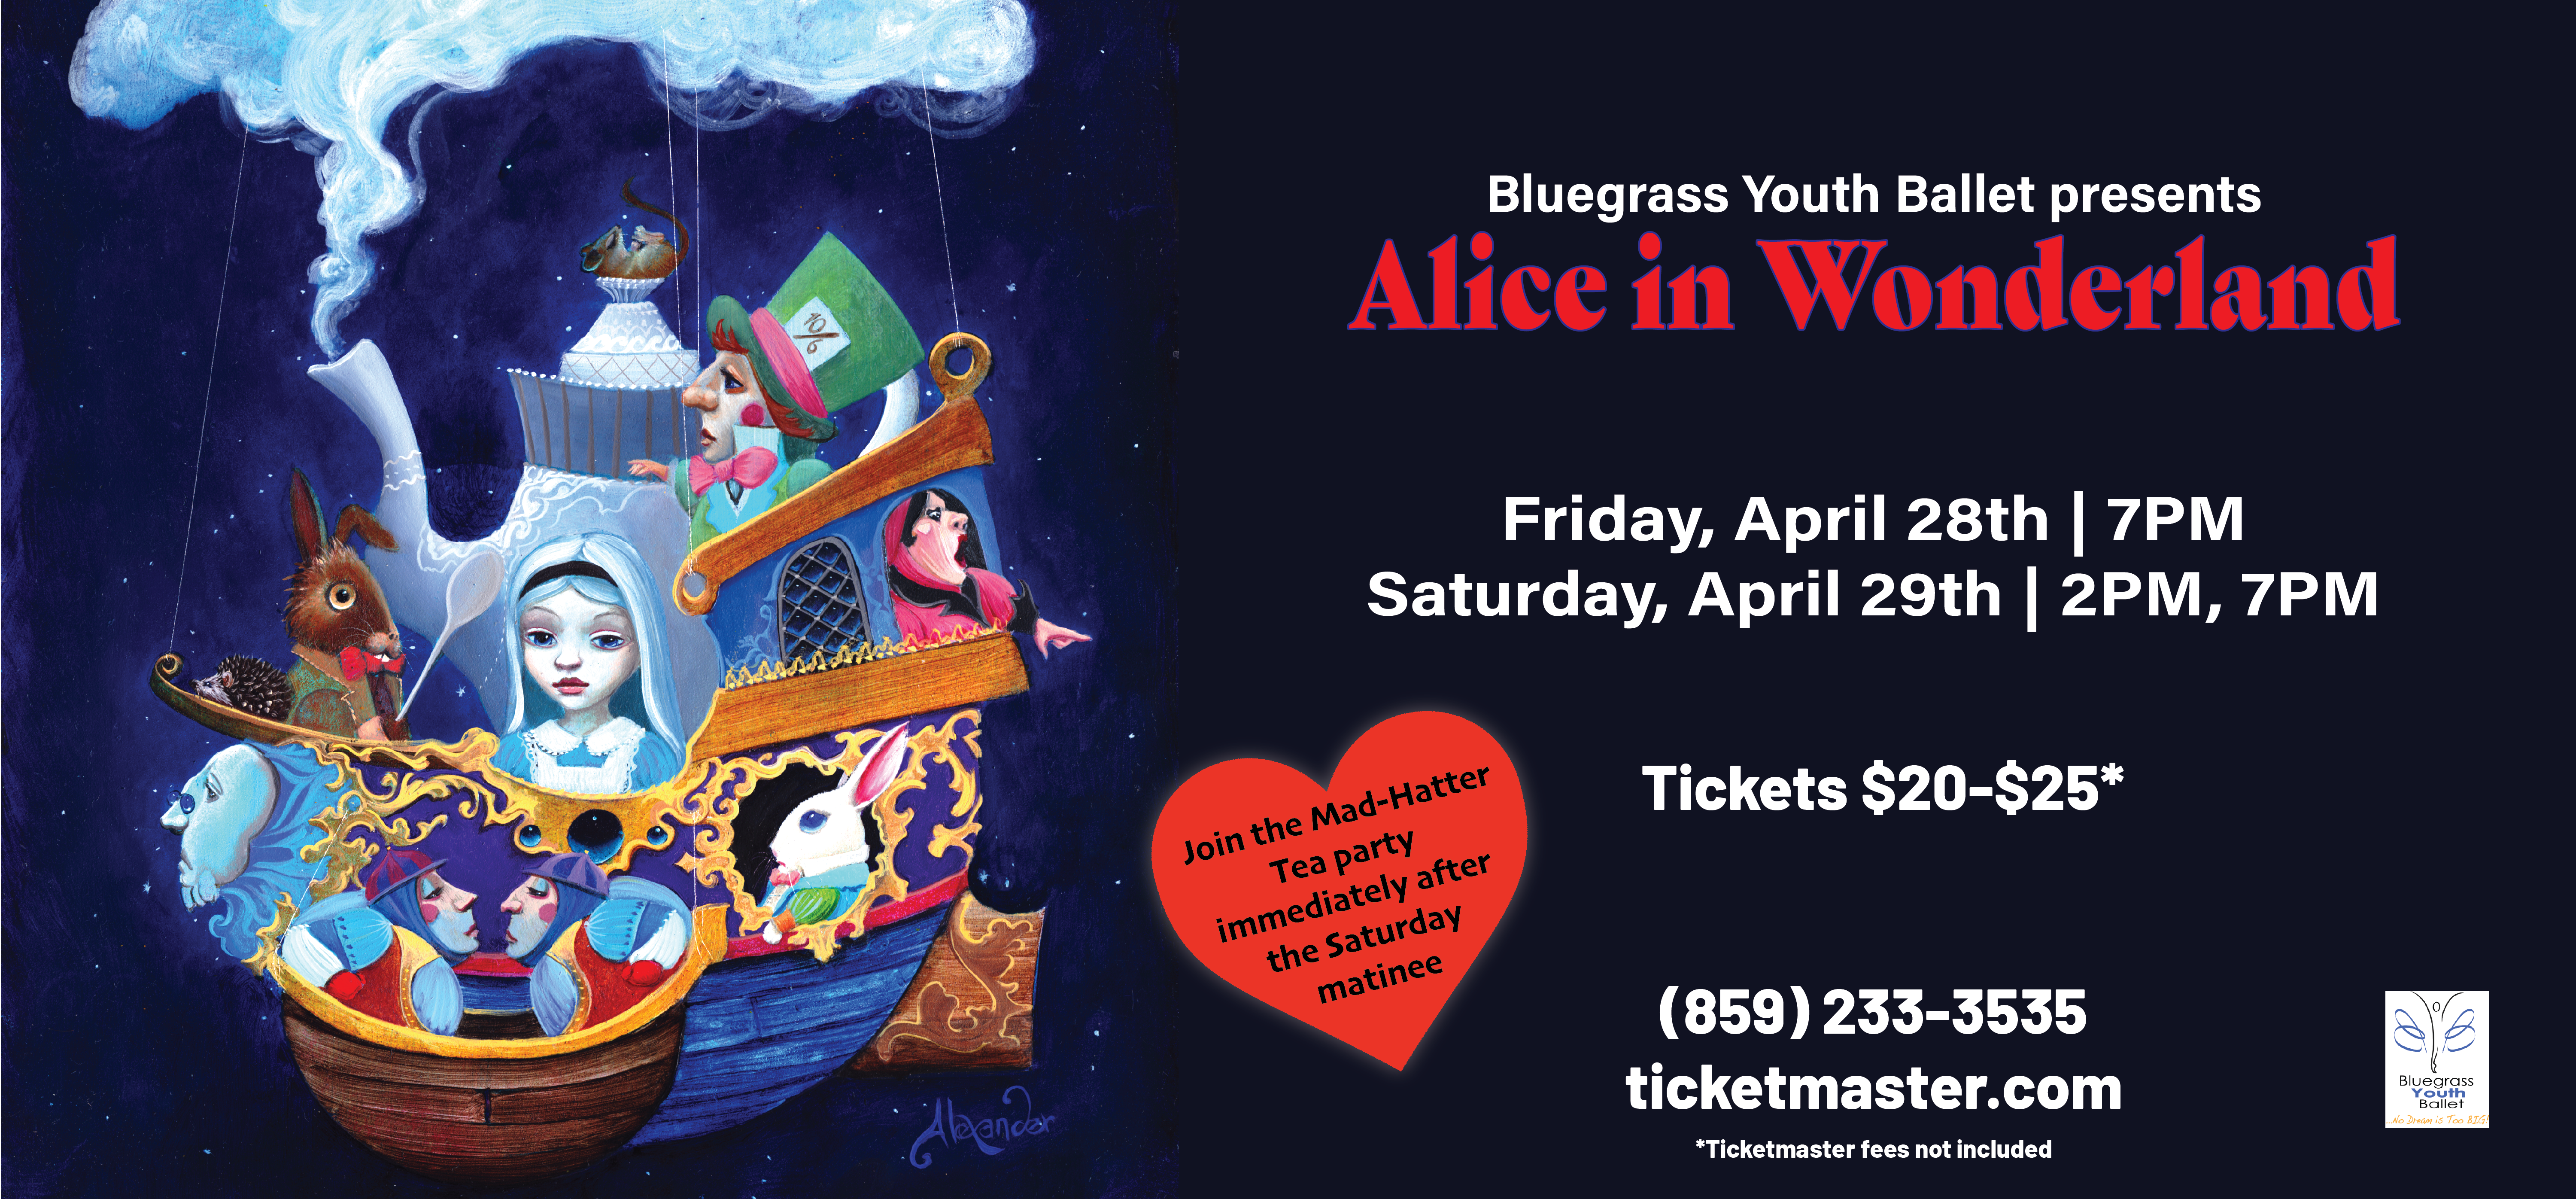 Bluegrass Youth Ballet Presents: Alice in Wonderland 